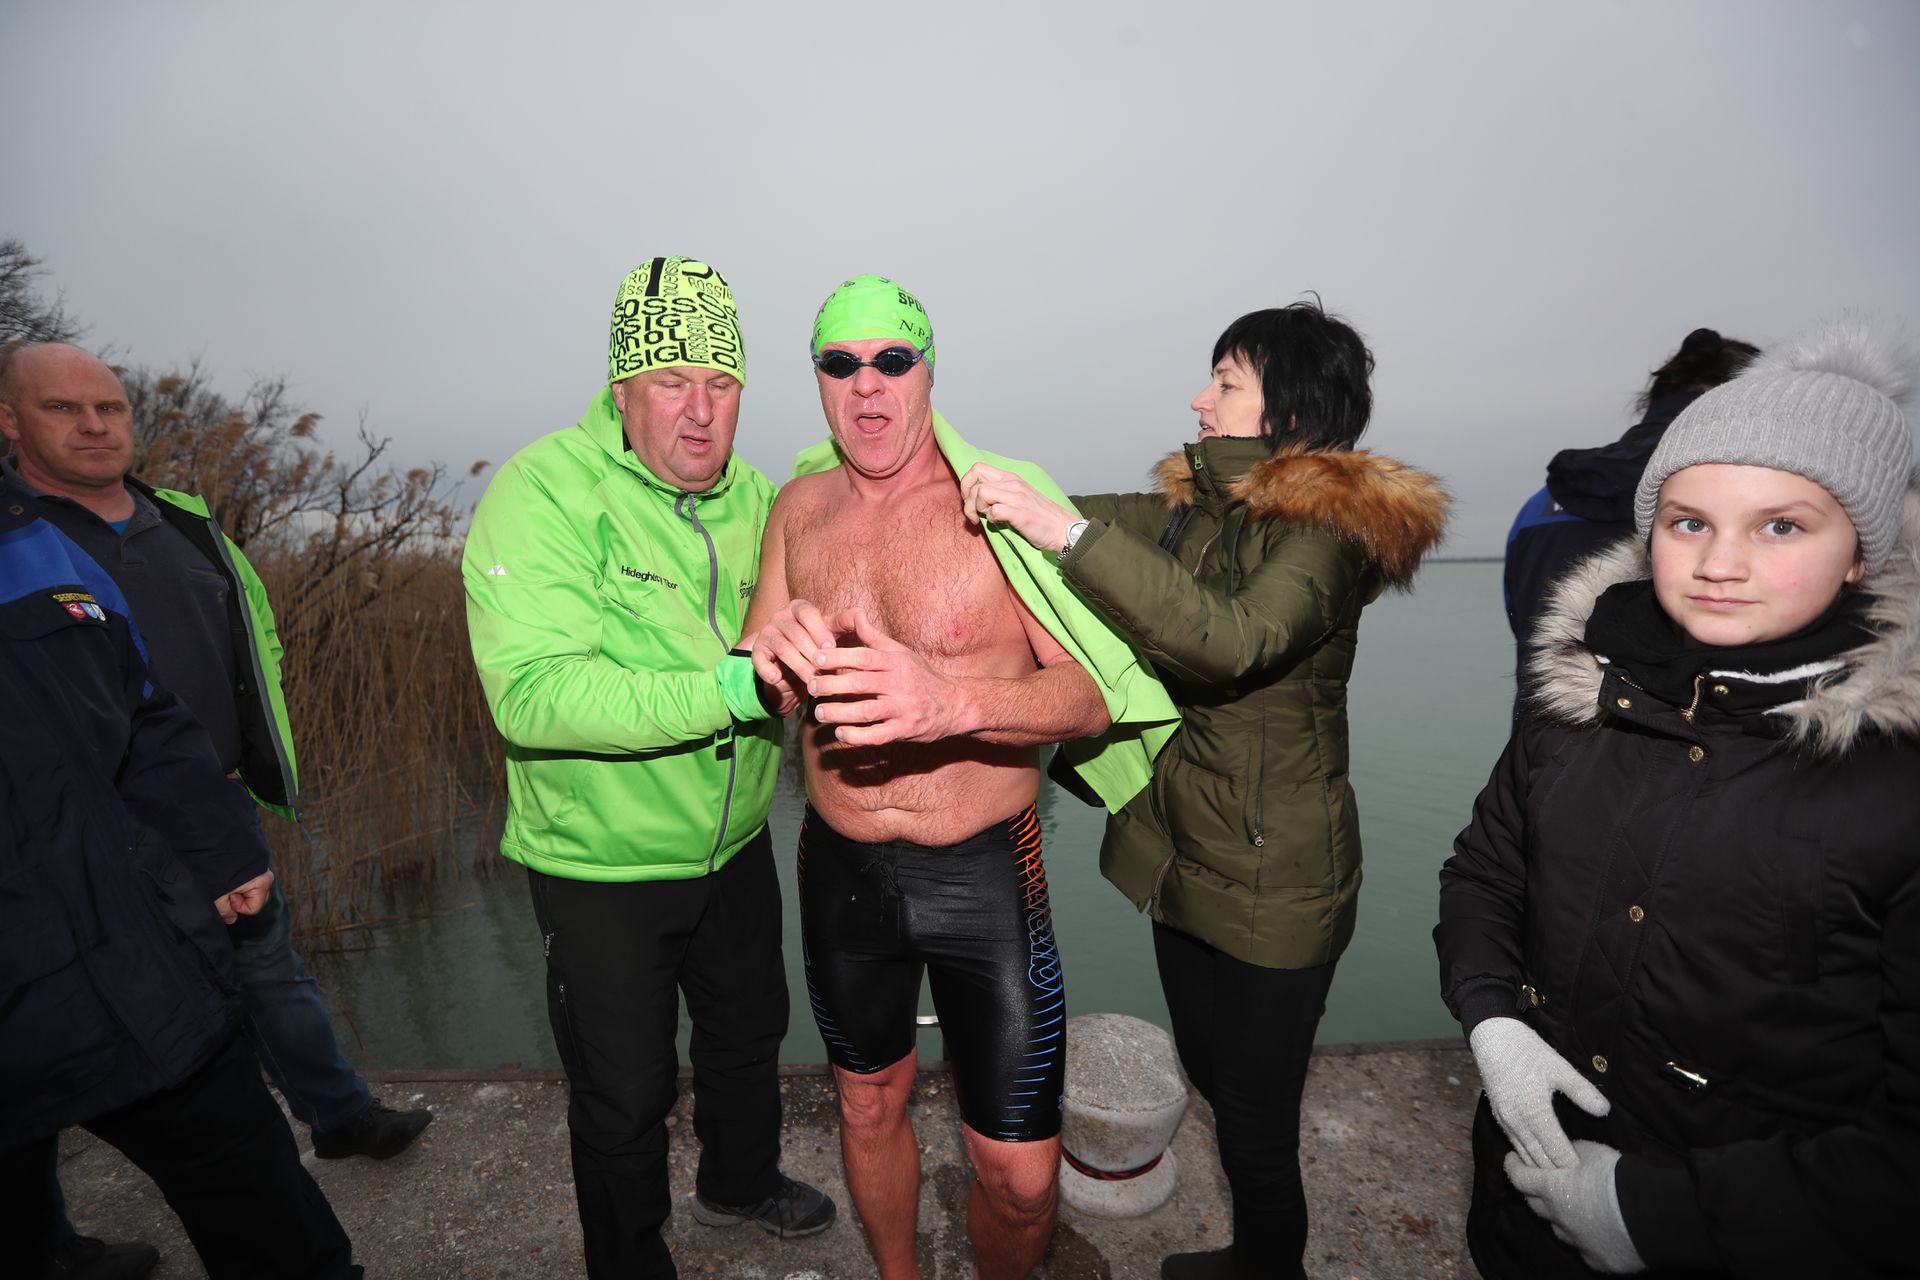 Az átfagyott sportolót a melegedőbe kísérték/ Fotó: Zsolnai Péter